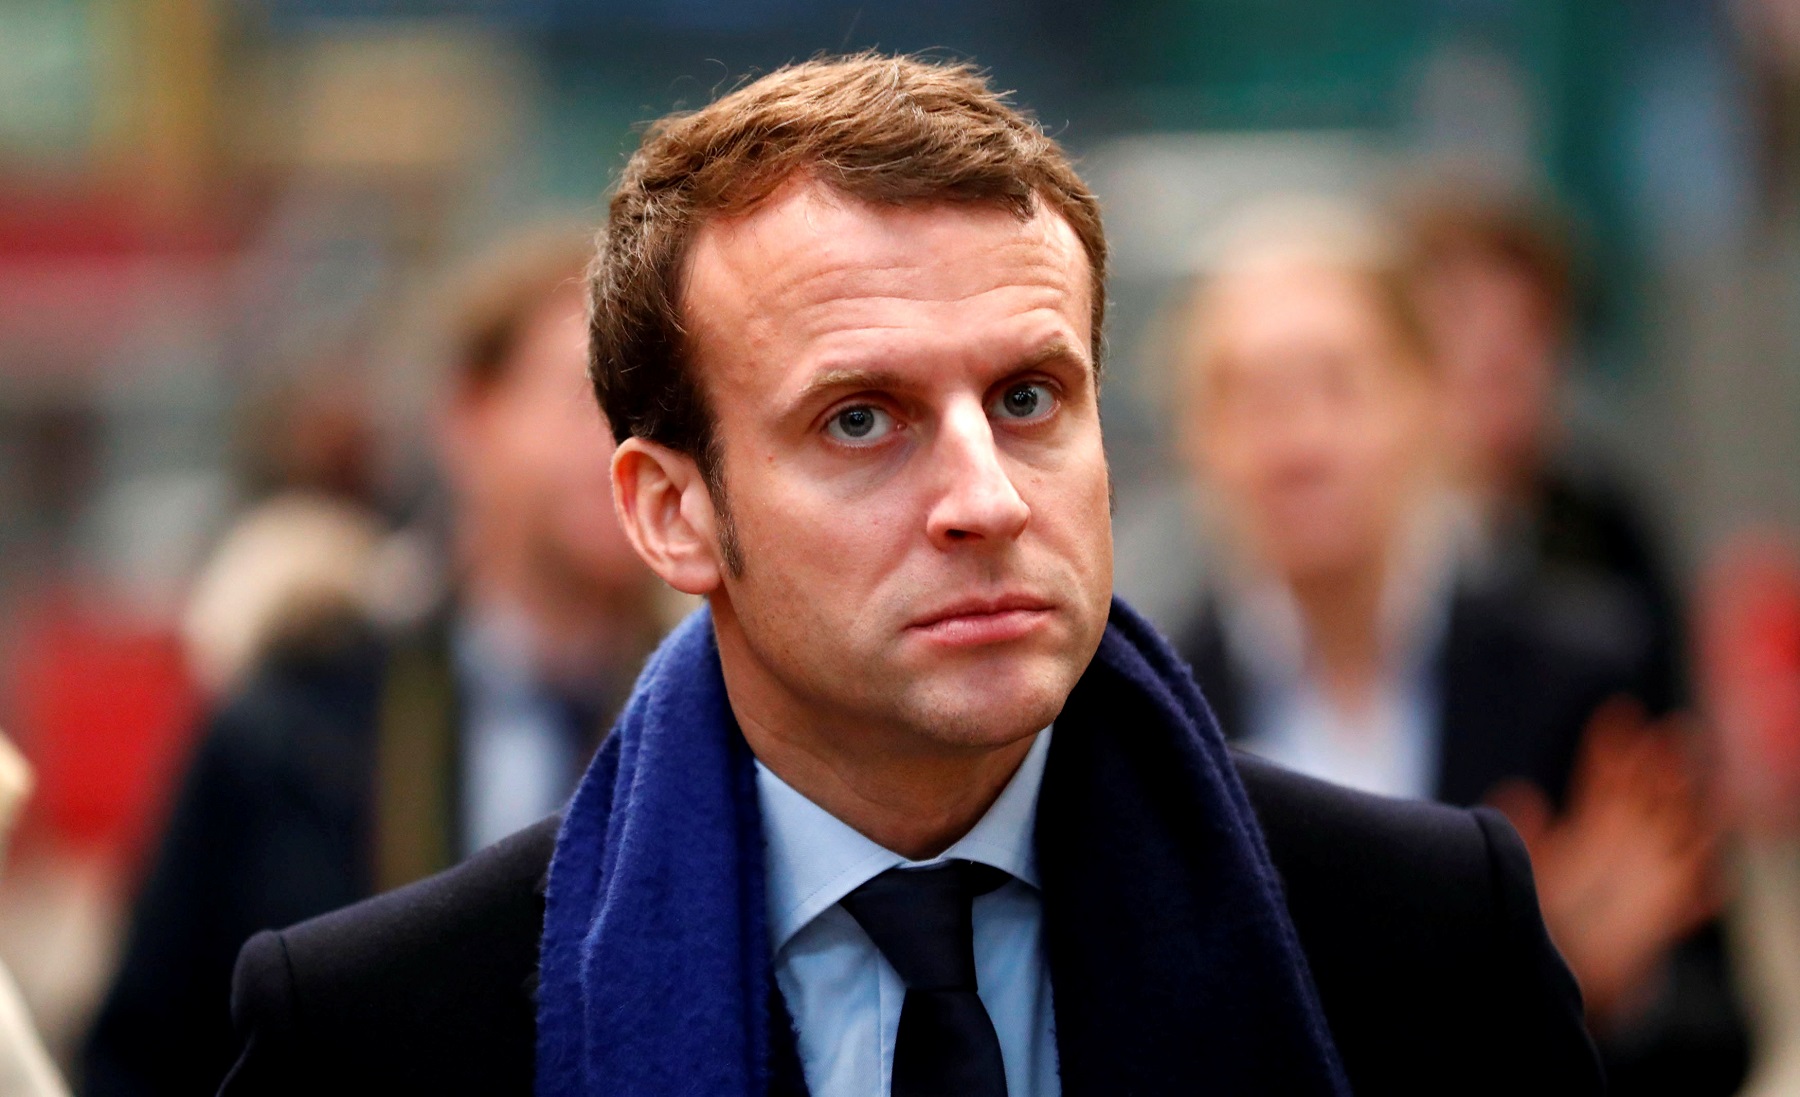 Macron vuole riscrivere il codice del lavoro francese per togliere diritti ai lavoratori